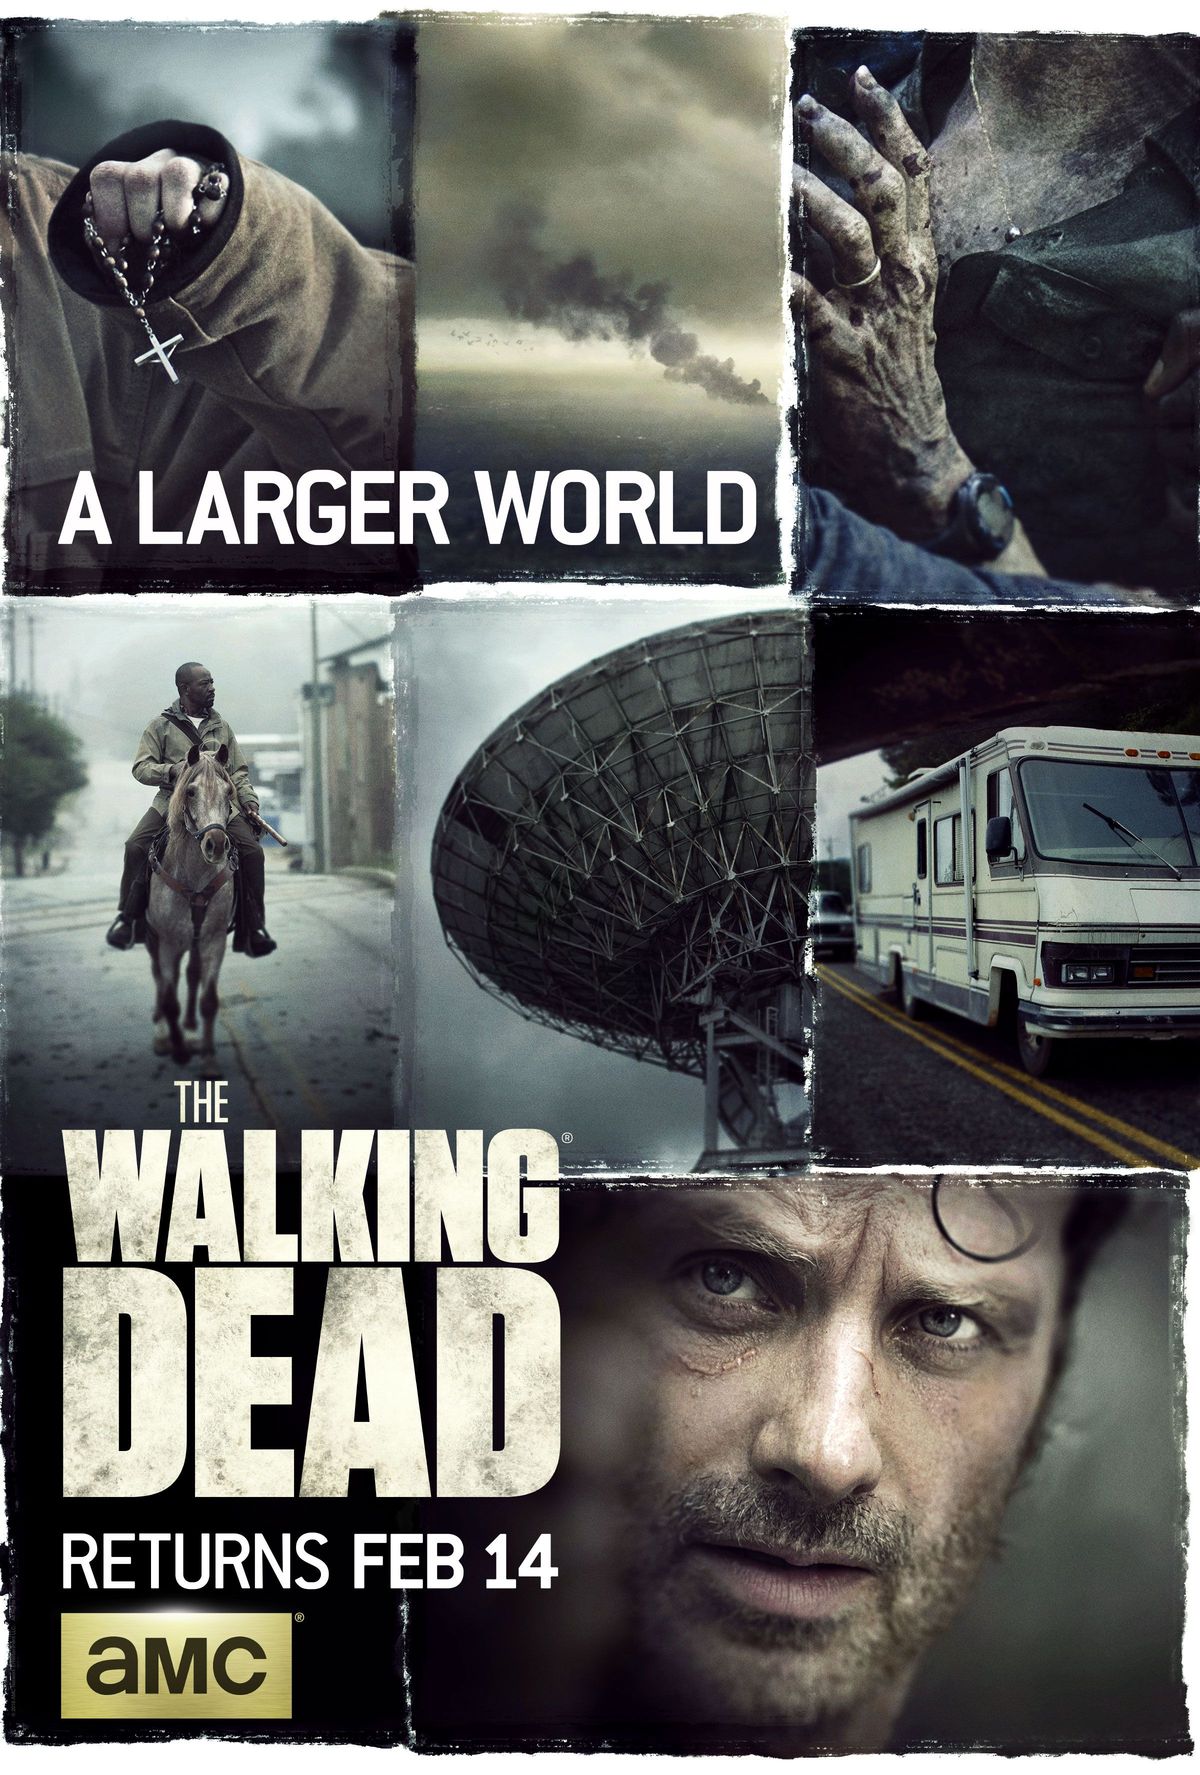 El nou pòster de la temporada 6 de The Walking Dead promet un món més gran